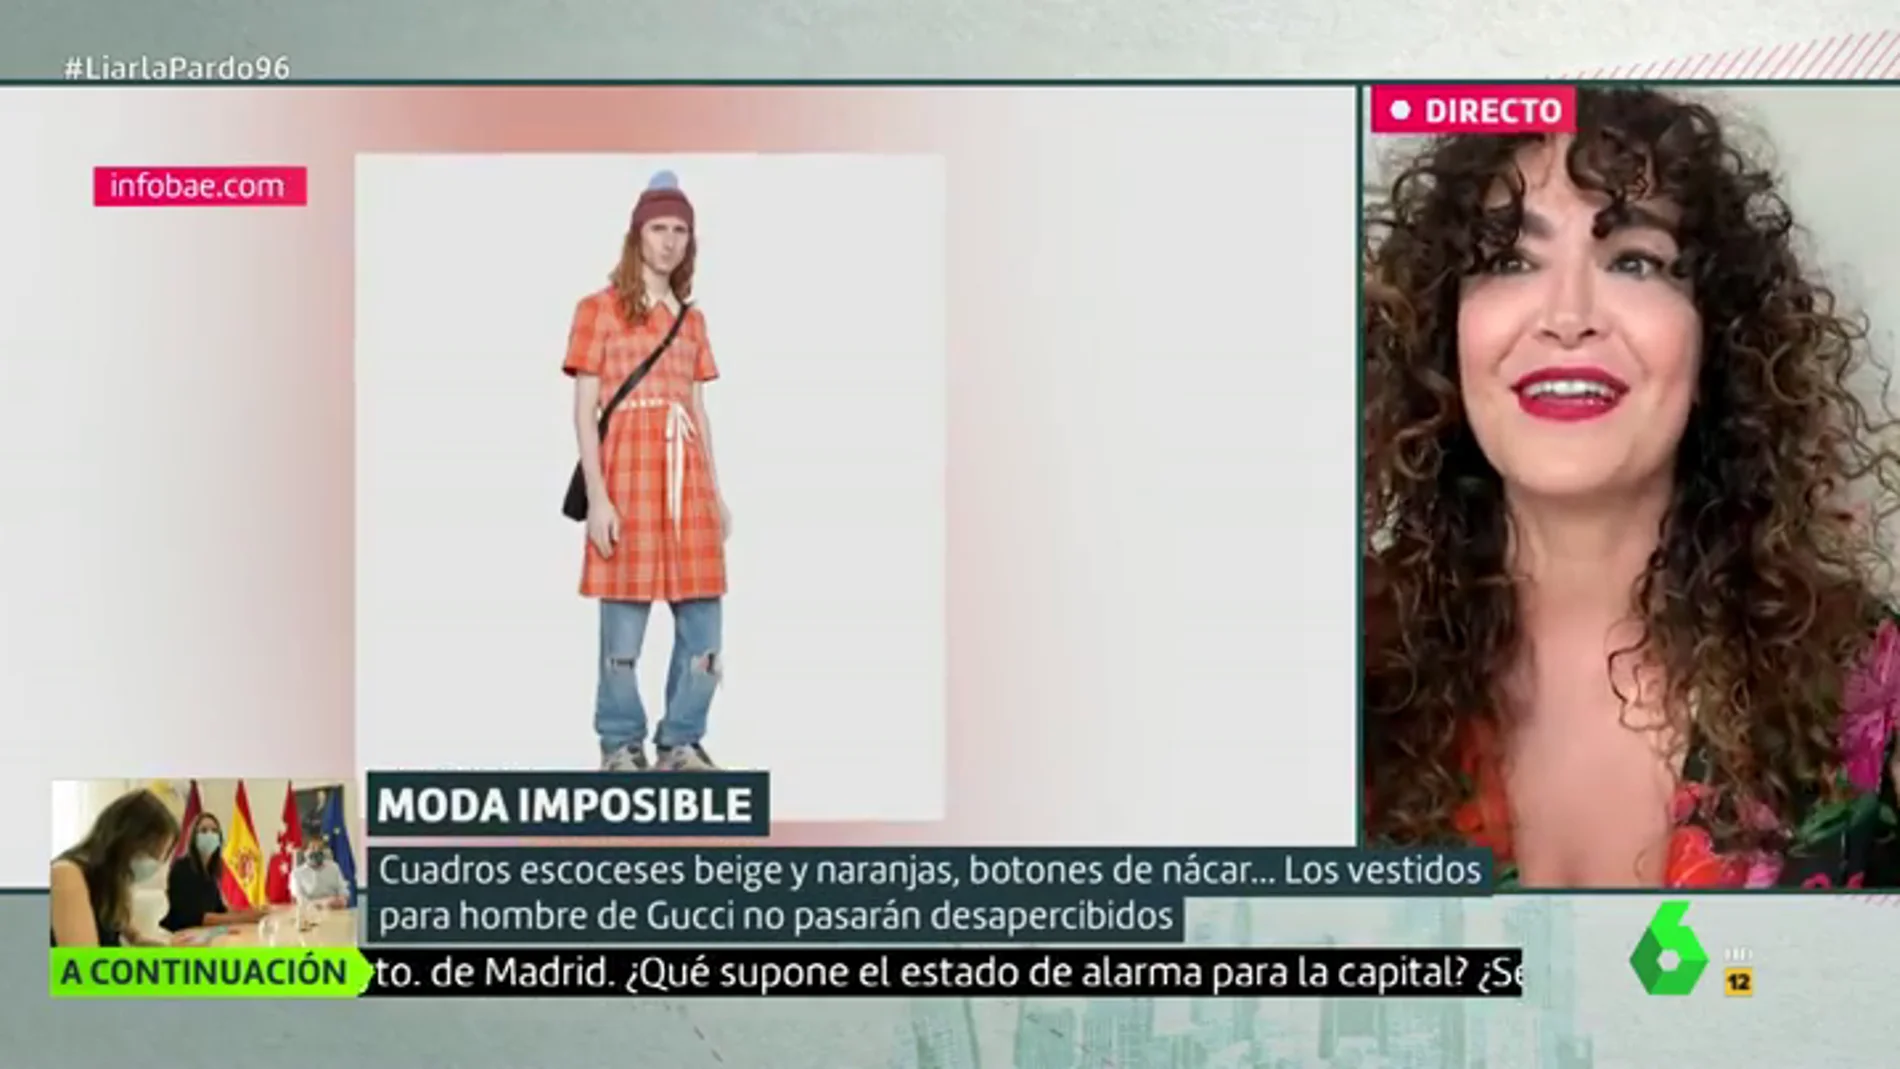 El alegato de la diseñadora Cristina Rodríguez a favor de las faldas para hombres: "Nos creemos modernos pero somos rancios"